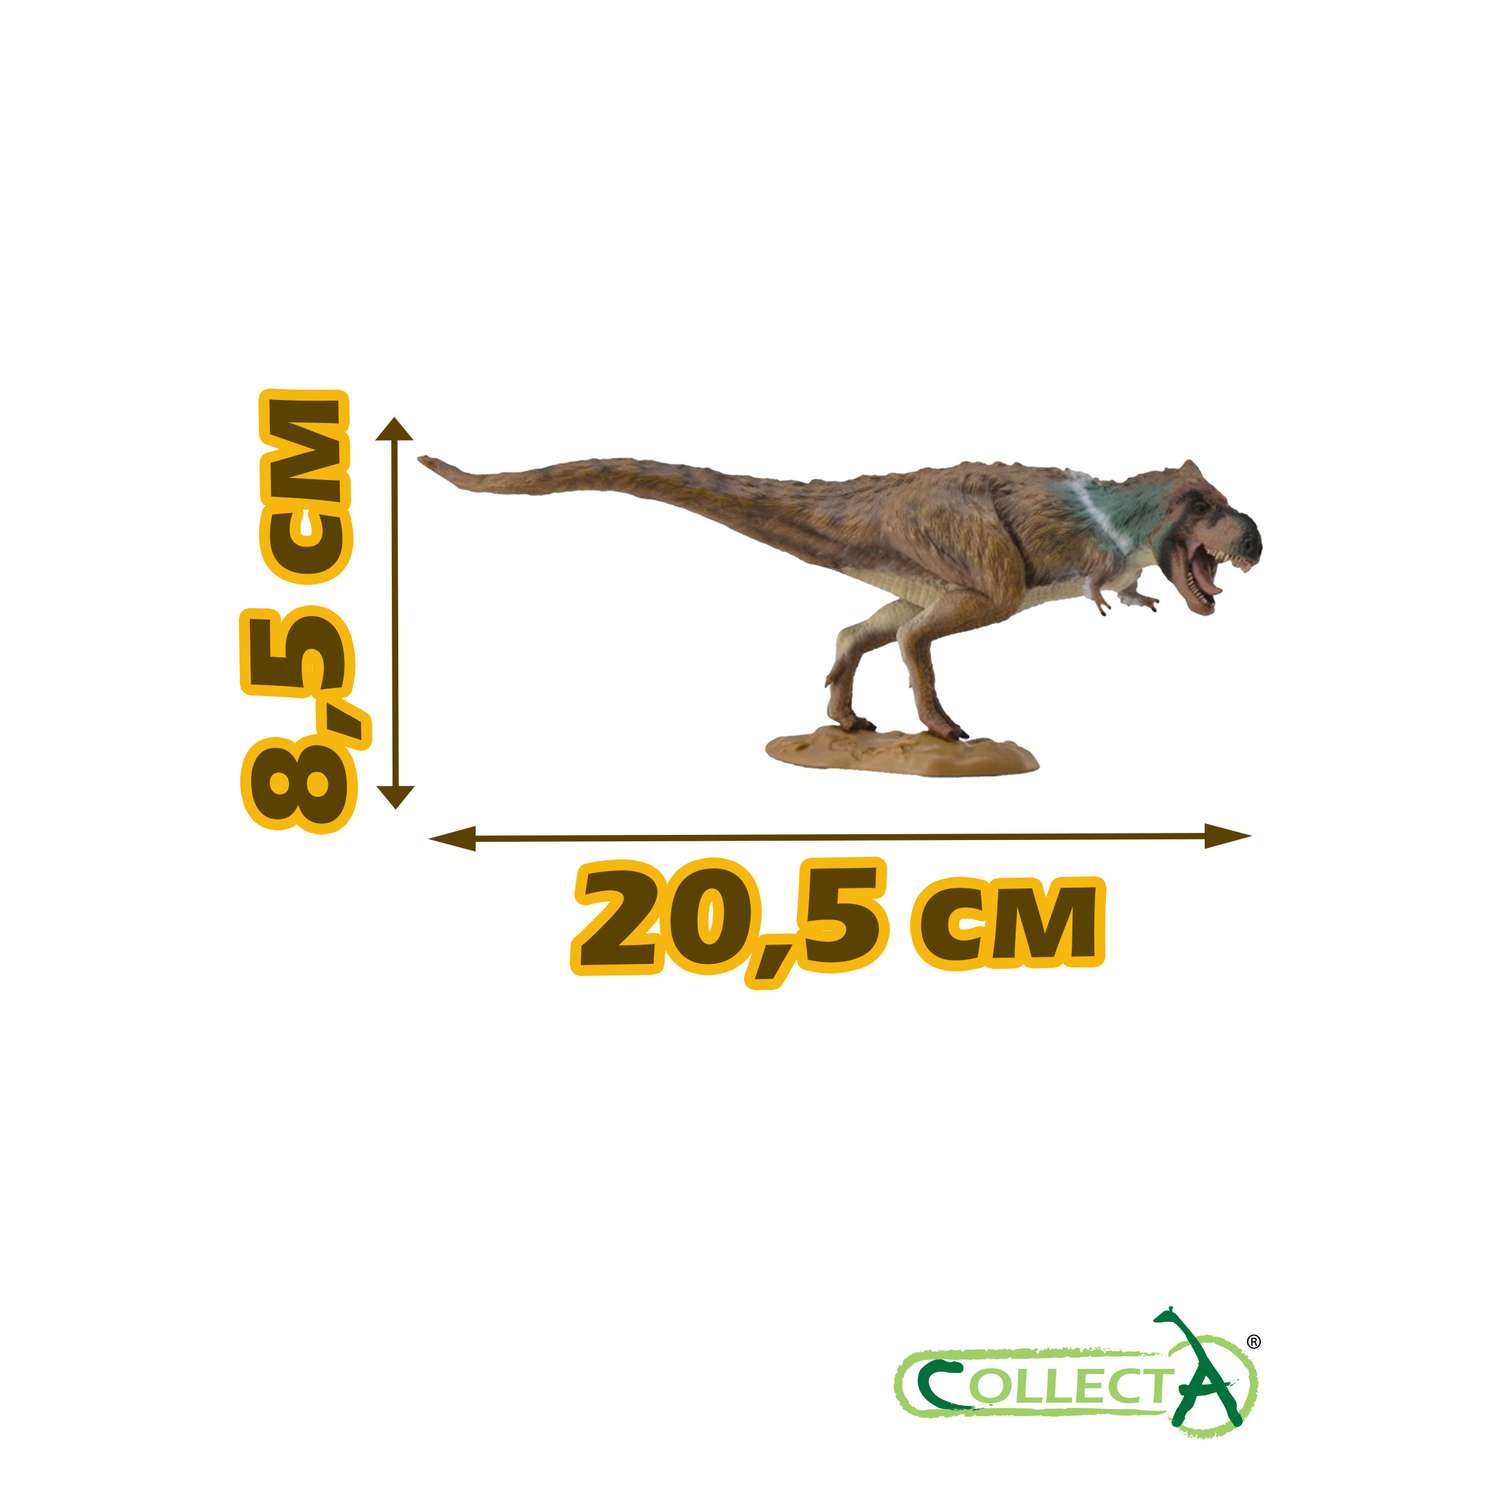 Игрушка Collecta Тираннозавр на охоте фигурка динозавра - фото 2